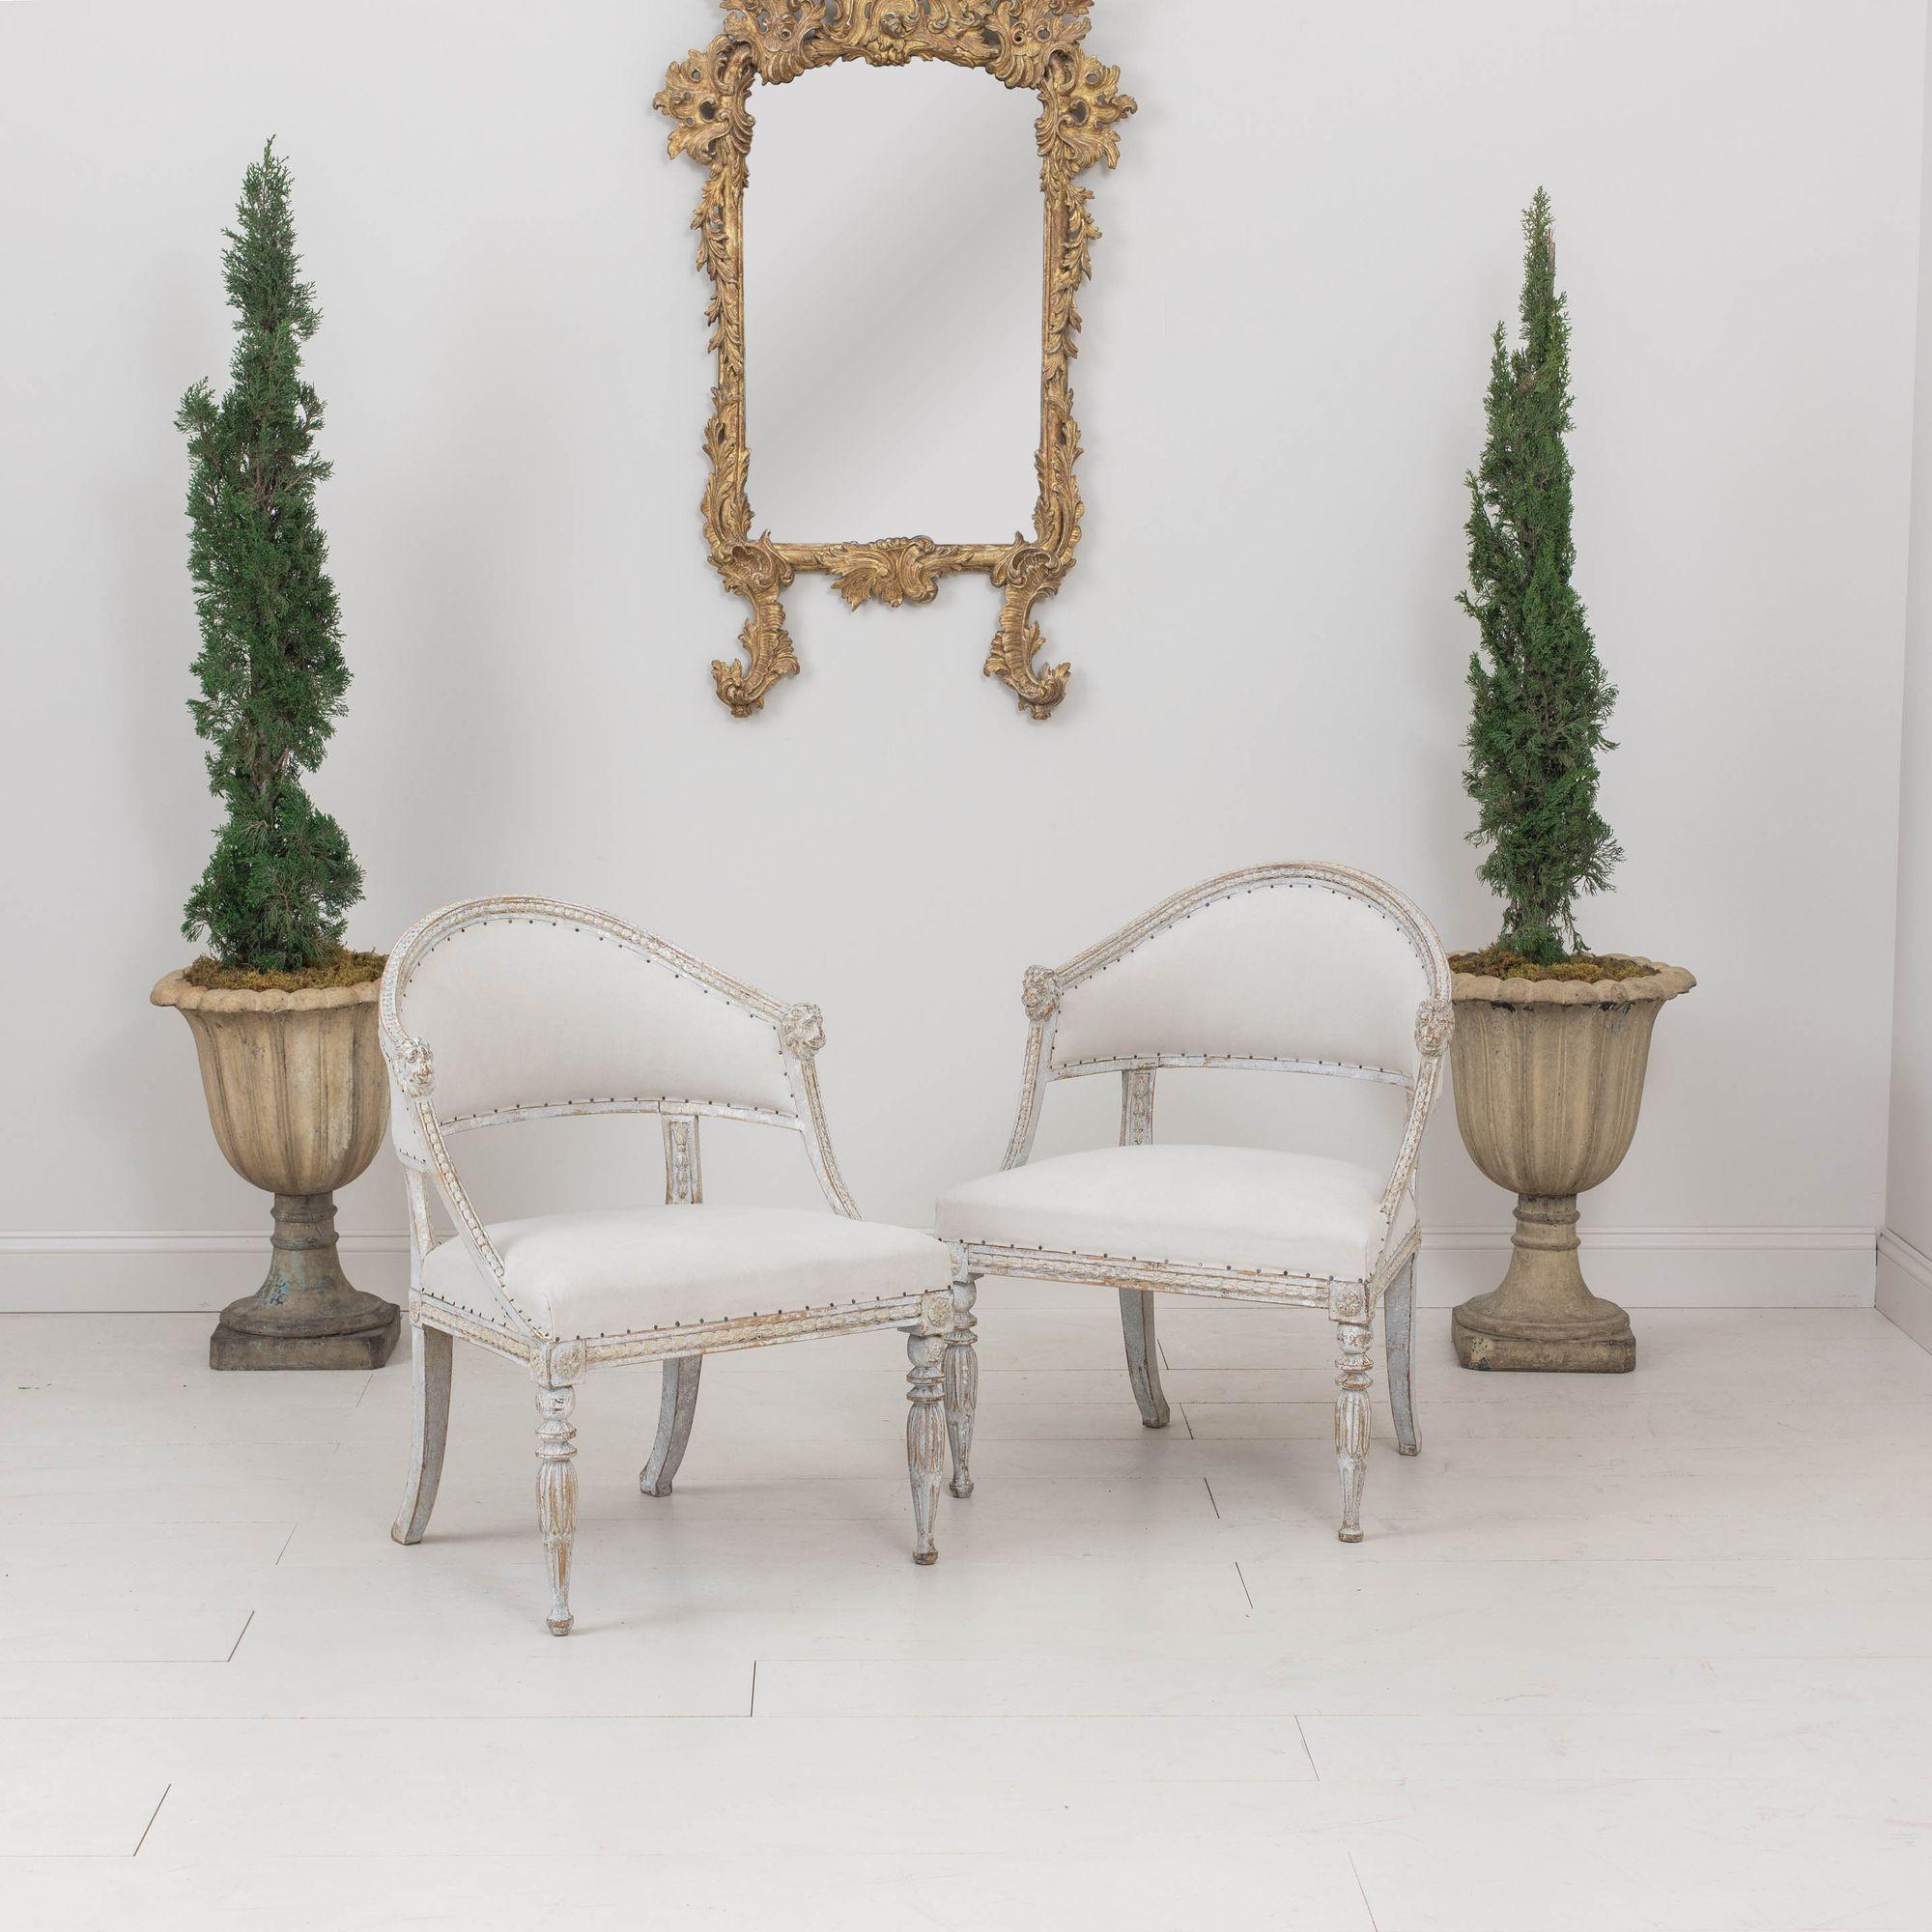 Zwei antike schwedische Sessel im Gustavianischen Stil, um 1880. Diese herrlichen Stühle haben eine geformte Rückenlehne mit geschnitzten Löwenköpfen. Der Rahmen weist geschnitzte Glockenblumen auf, die Vorderbeine sind mit Lotosblumen und Rosetten